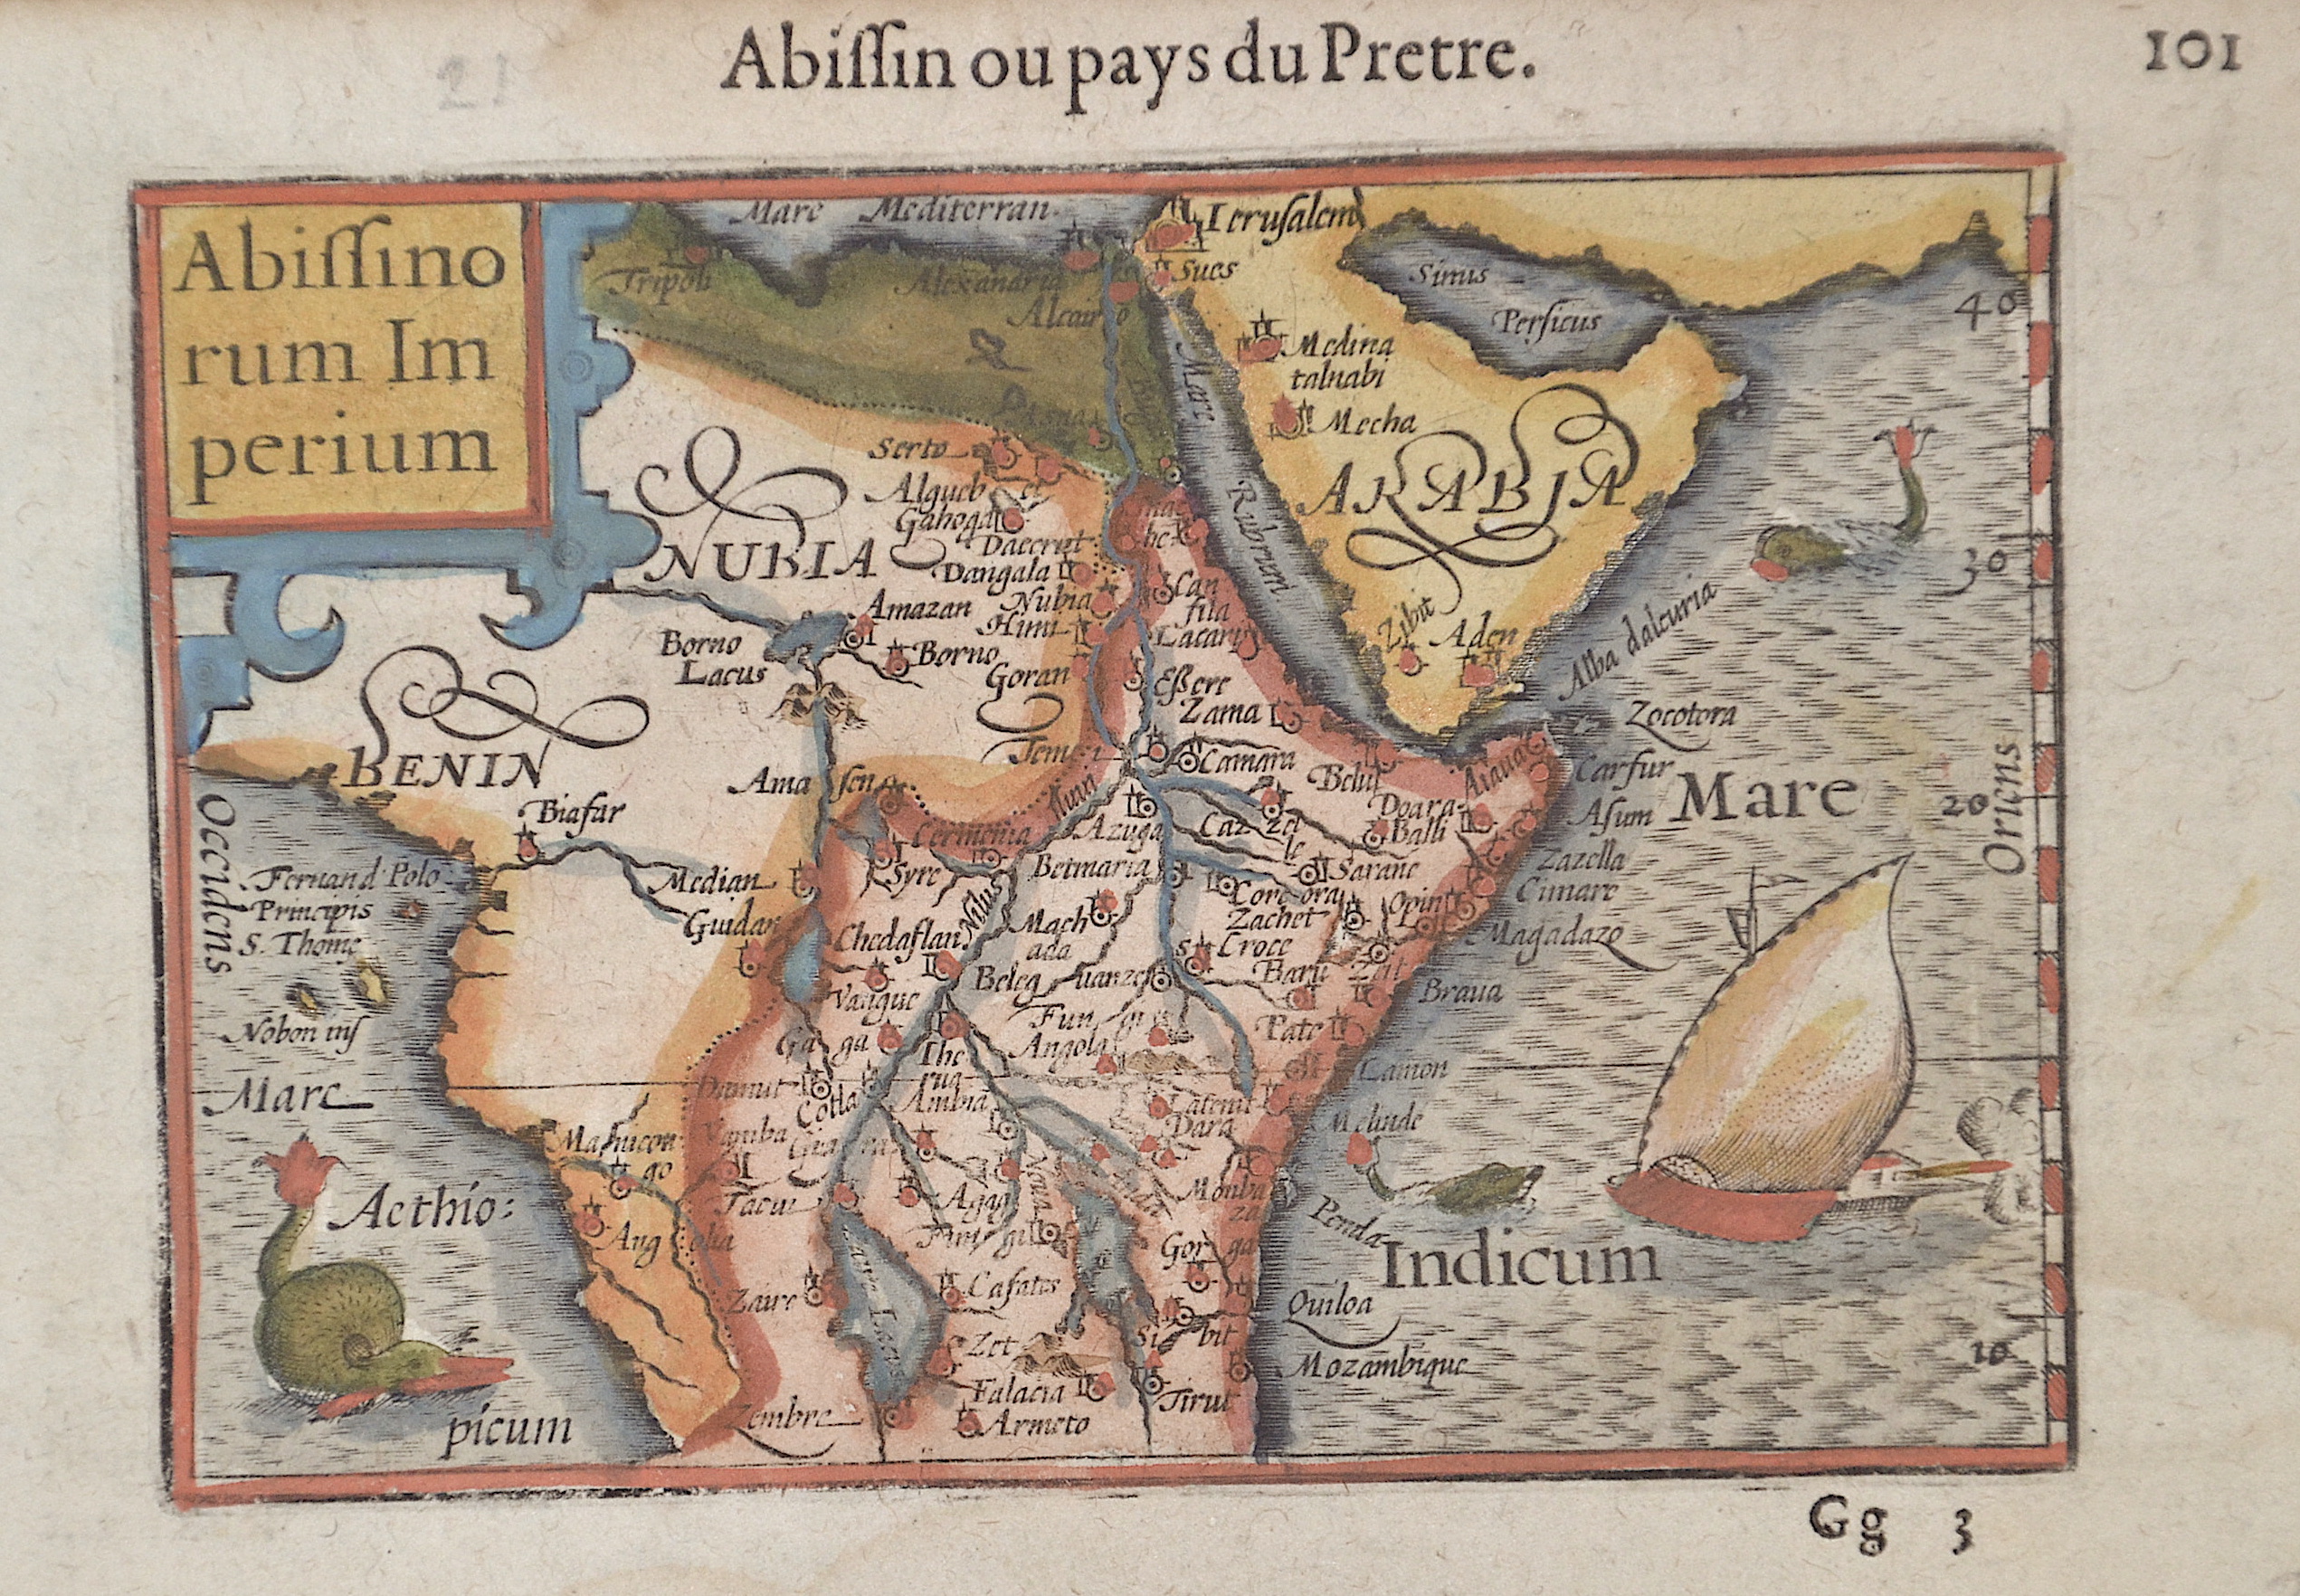 Bertius Petrus Abissinorum Imperium / Abissin ou pays du Pretre.